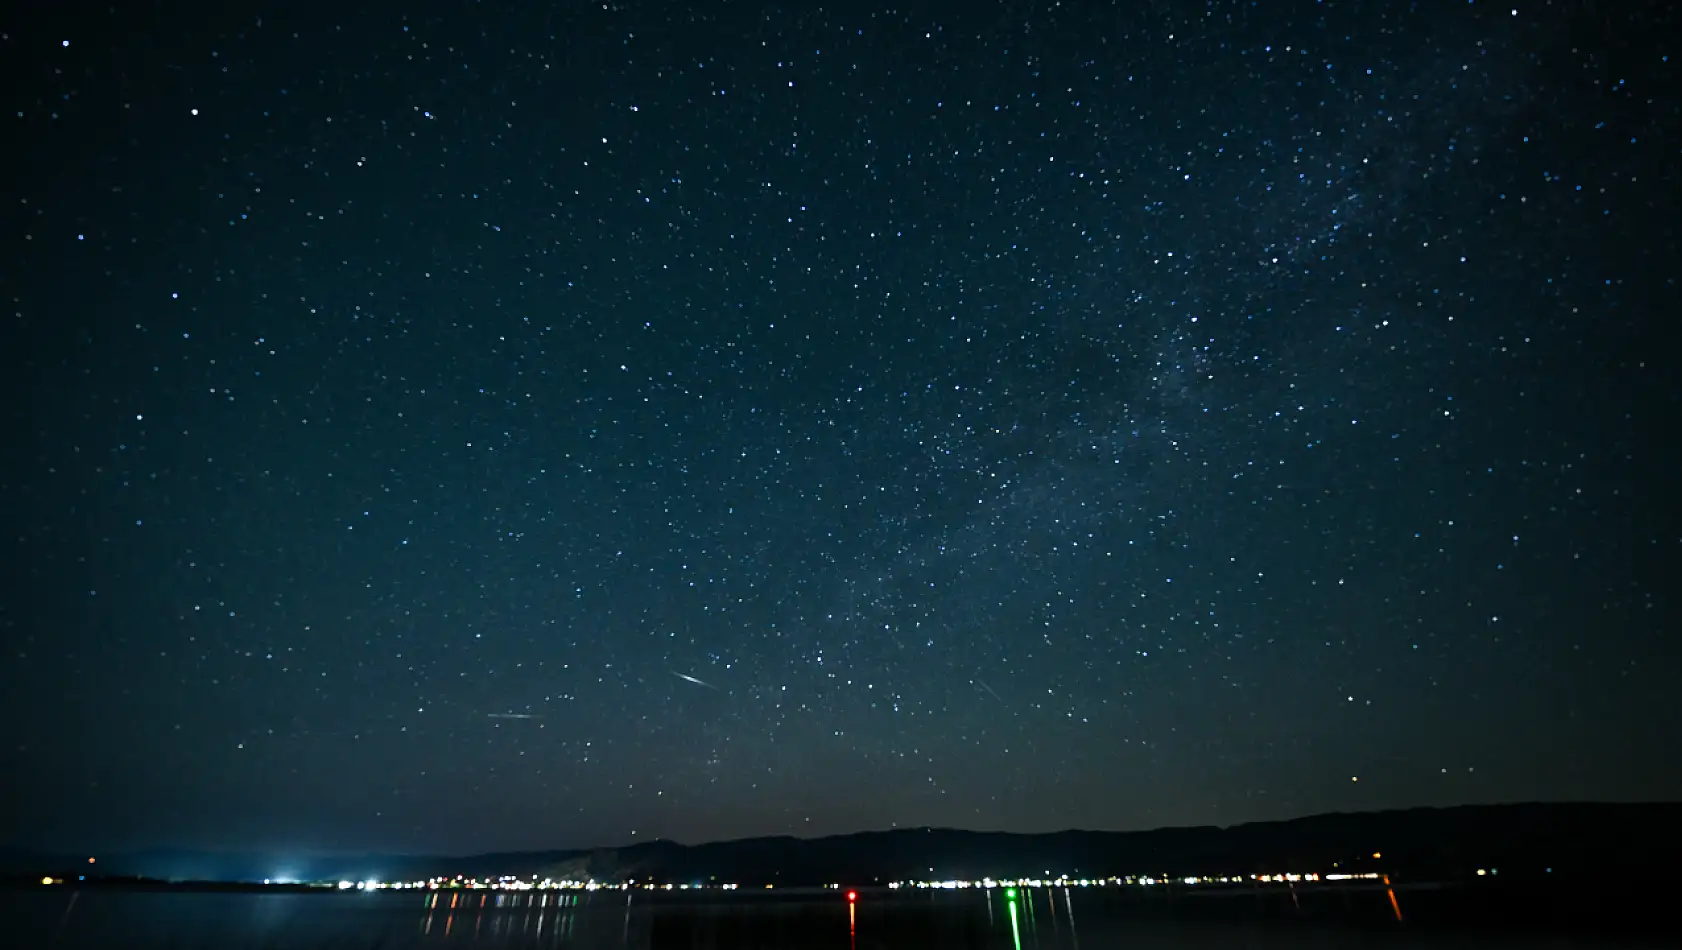 California'nın Clear Lake Gölü'nde Muhteşem Manzara: Meteor Yağmuru ve Samanyolu Galaksisi Göz Kamaştırıyor